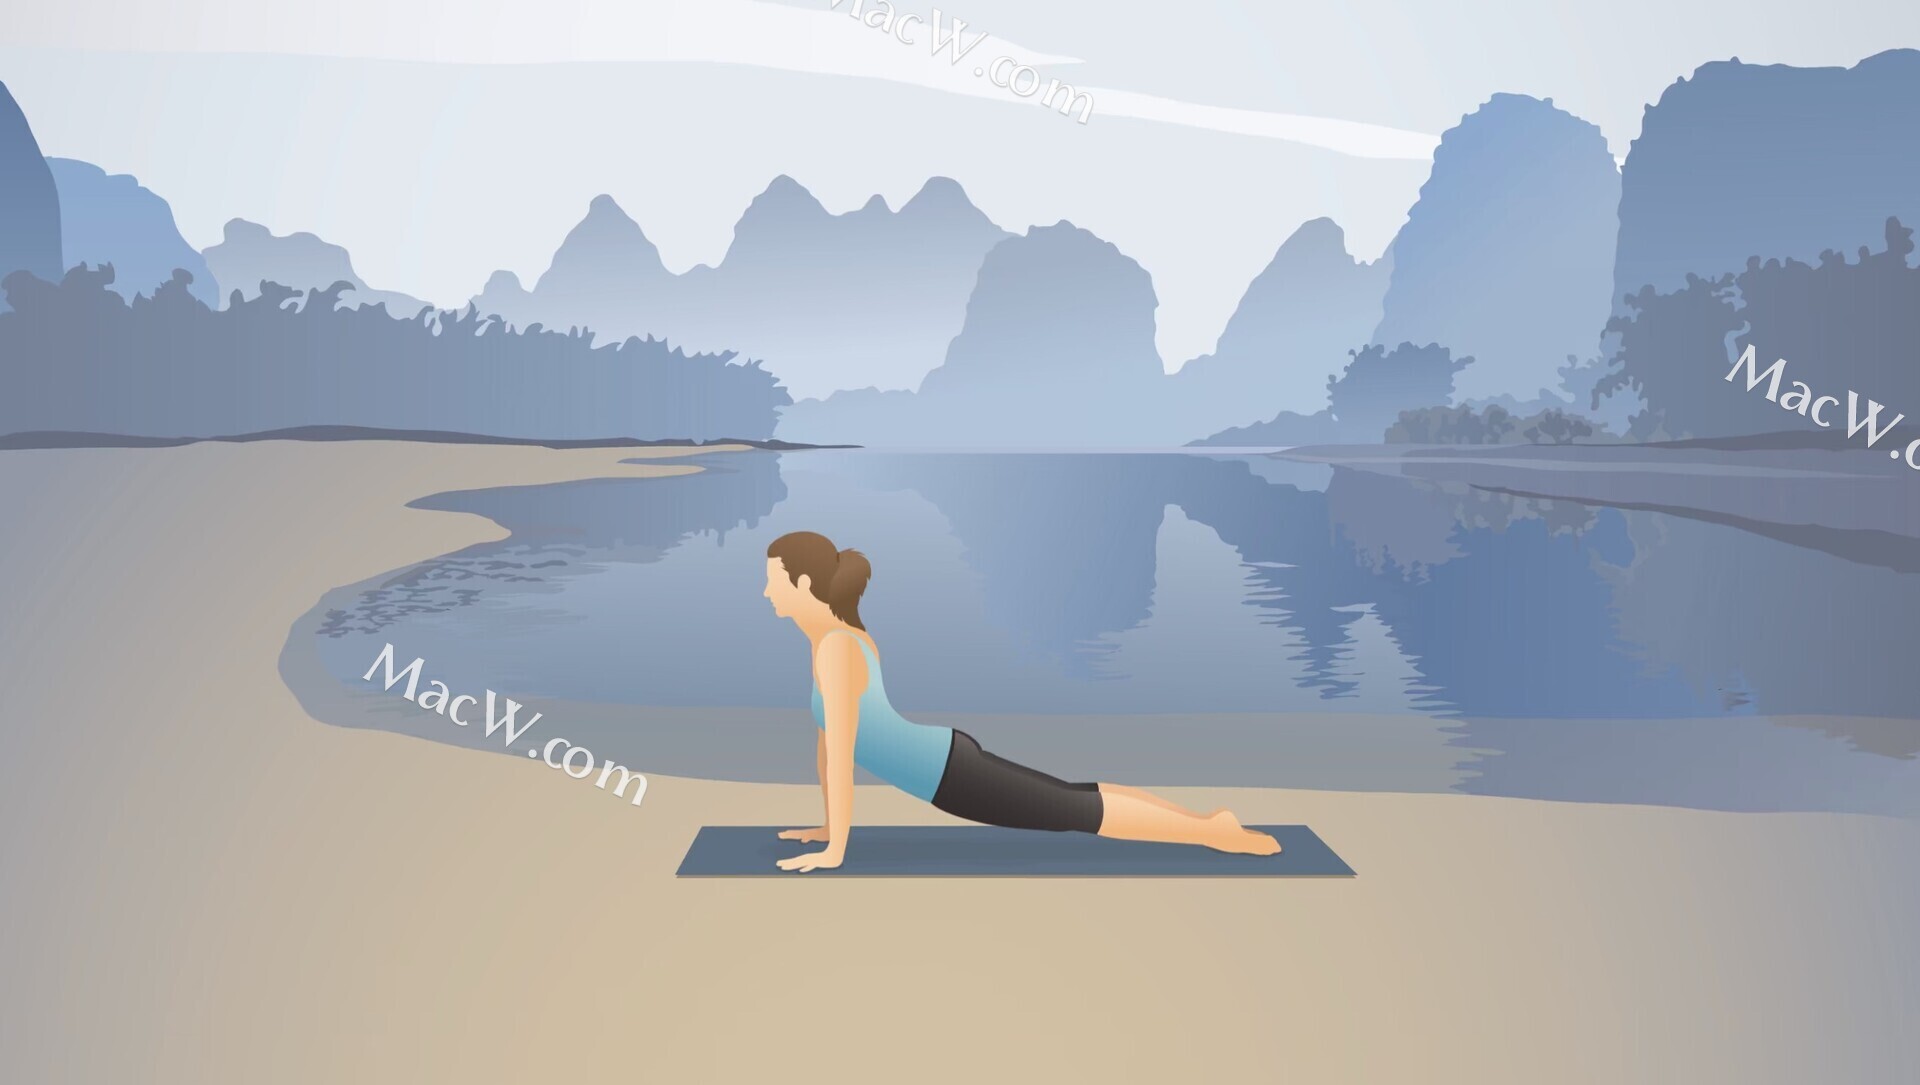 口袋瑜伽 Pocket Yoga for mac 专业瑜伽课程 打造完美身材